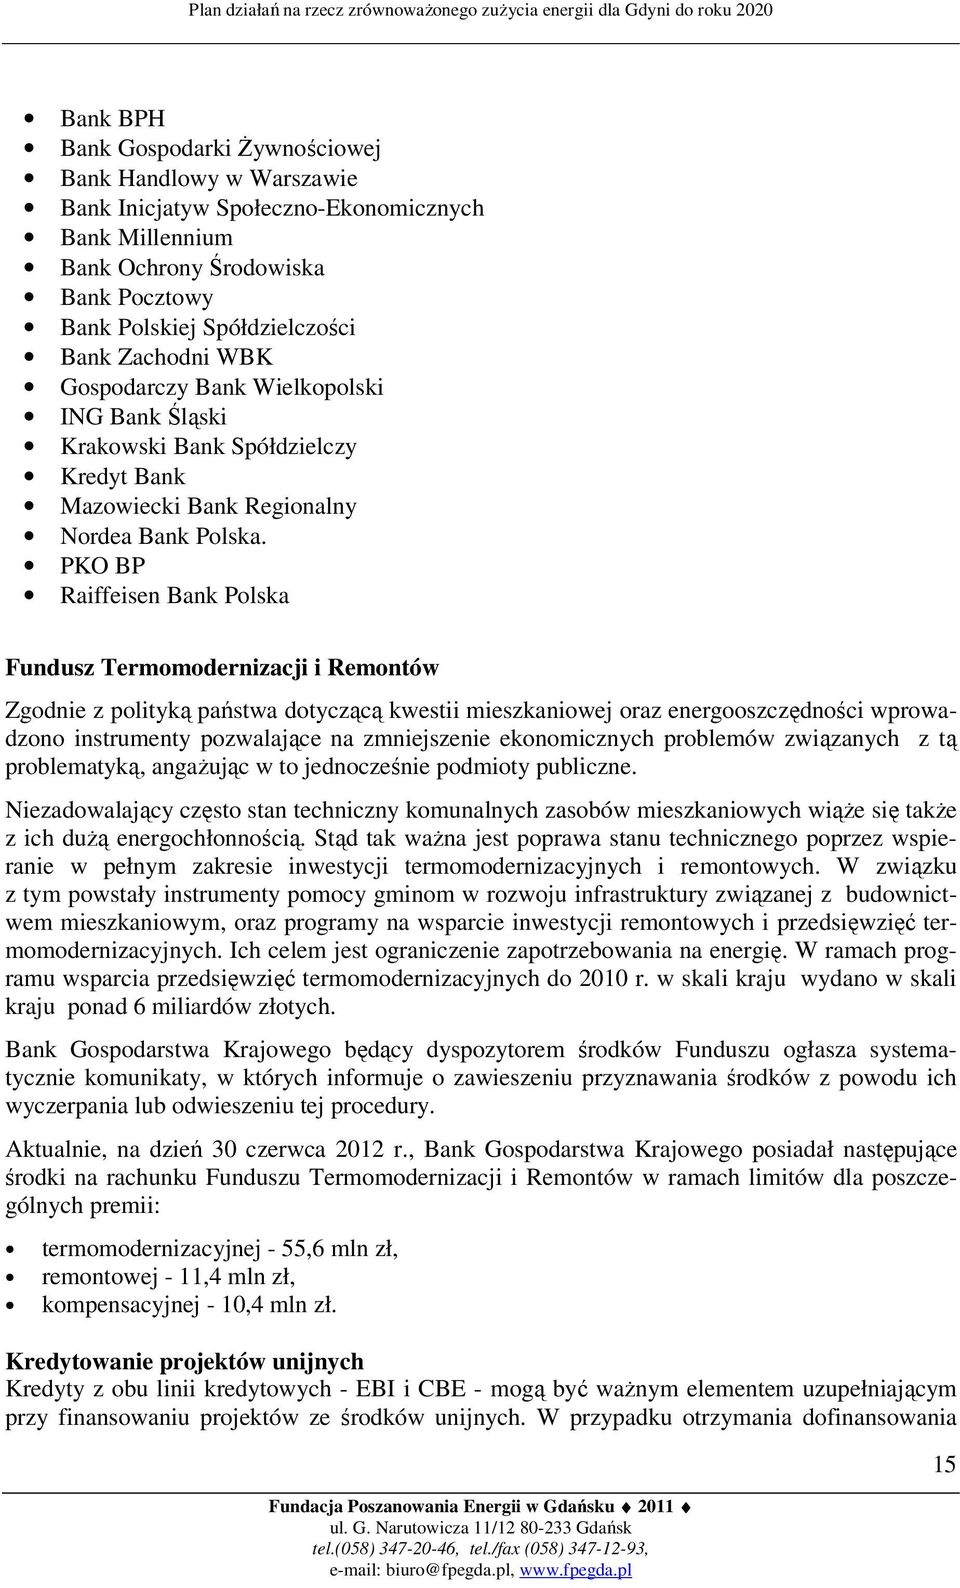 PKO BP Raiffeisen Bank Polska Fundusz Termomodernizacji i Remontów Zgodnie z polityką państwa dotyczącą kwestii mieszkaniowej oraz energooszczędności wprowadzono instrumenty pozwalające na